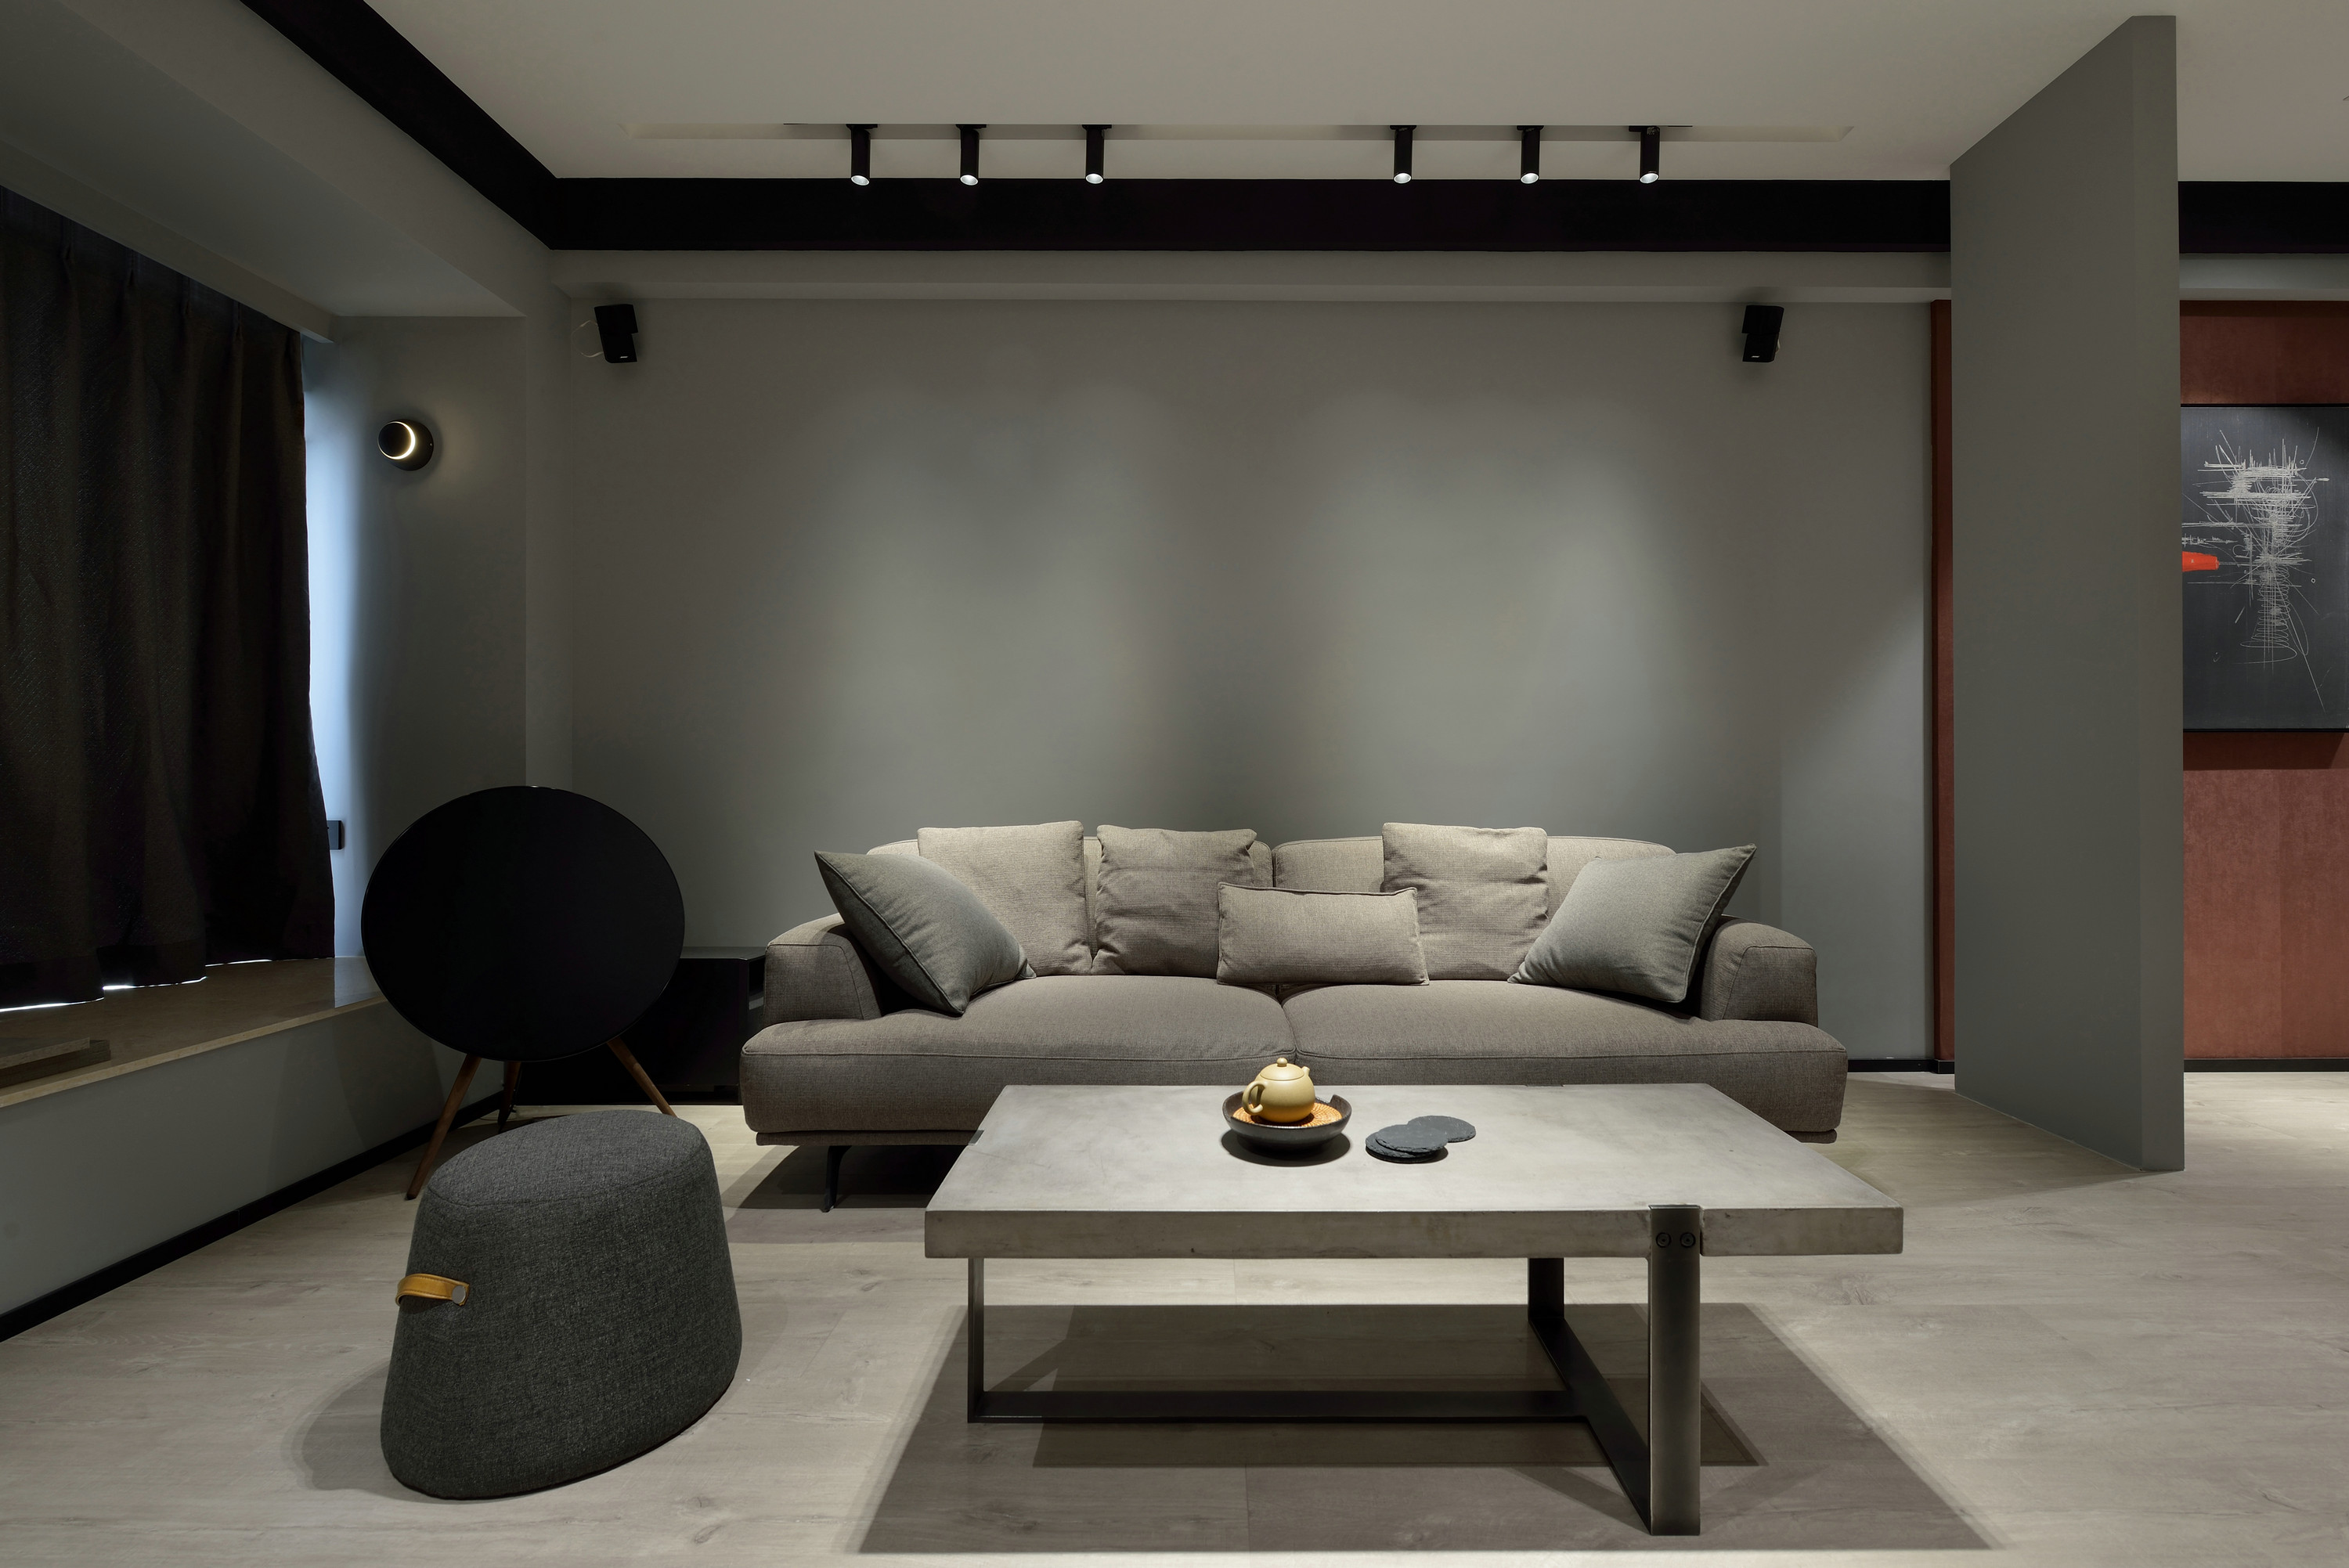 米灰色墙面自带工业气息，搭配布艺沙发，整个空间笼罩在俊雅悠然的气质中。